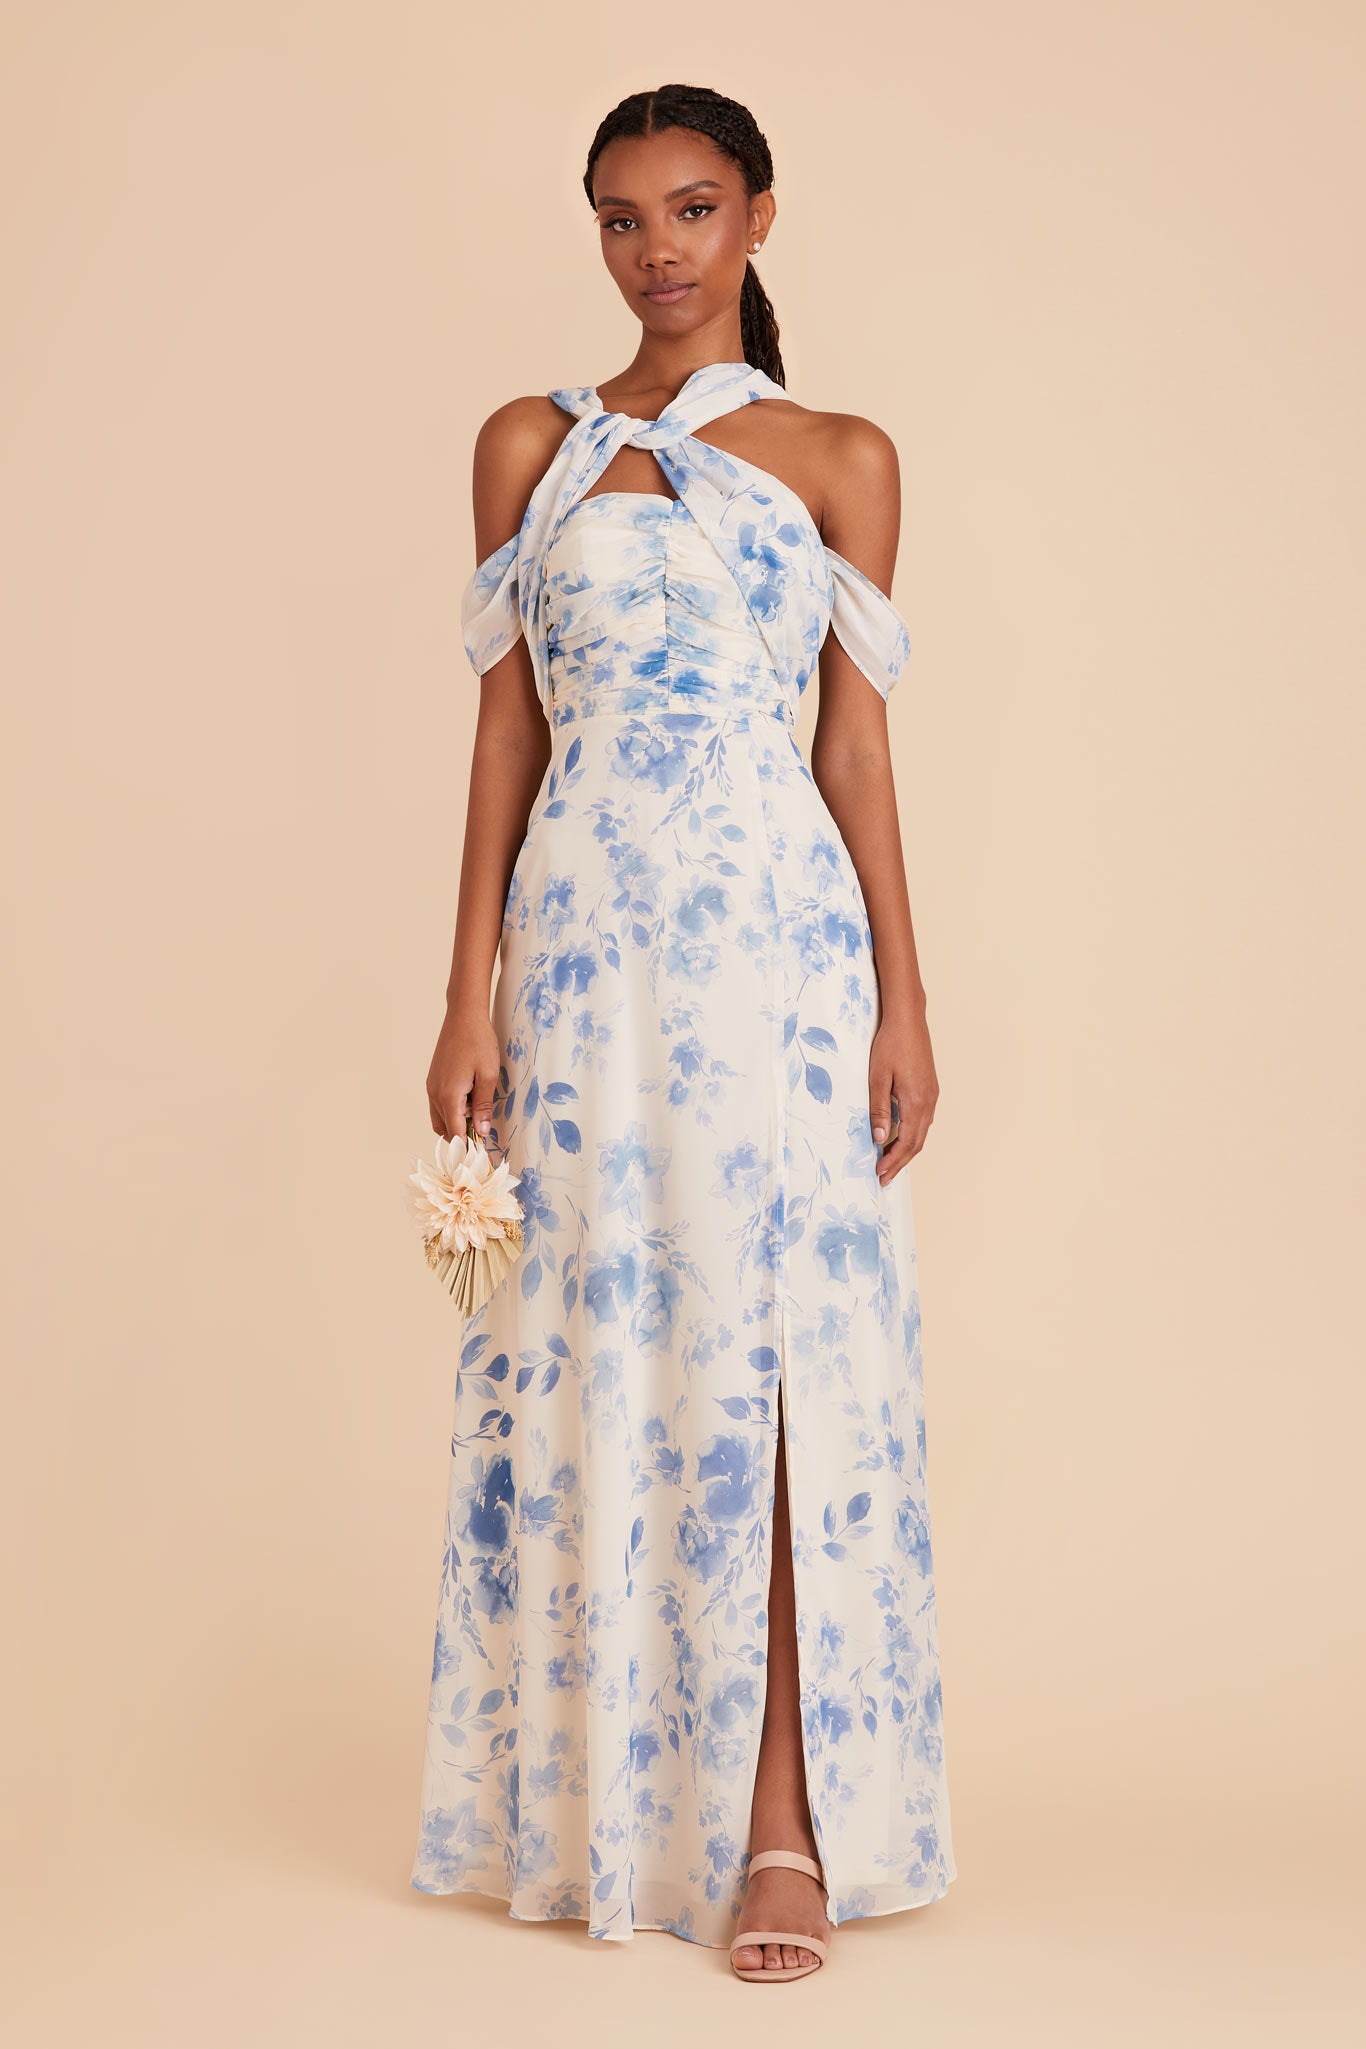 Blue Rococo Flora Cara Chiffon Dress by Birdy Grey